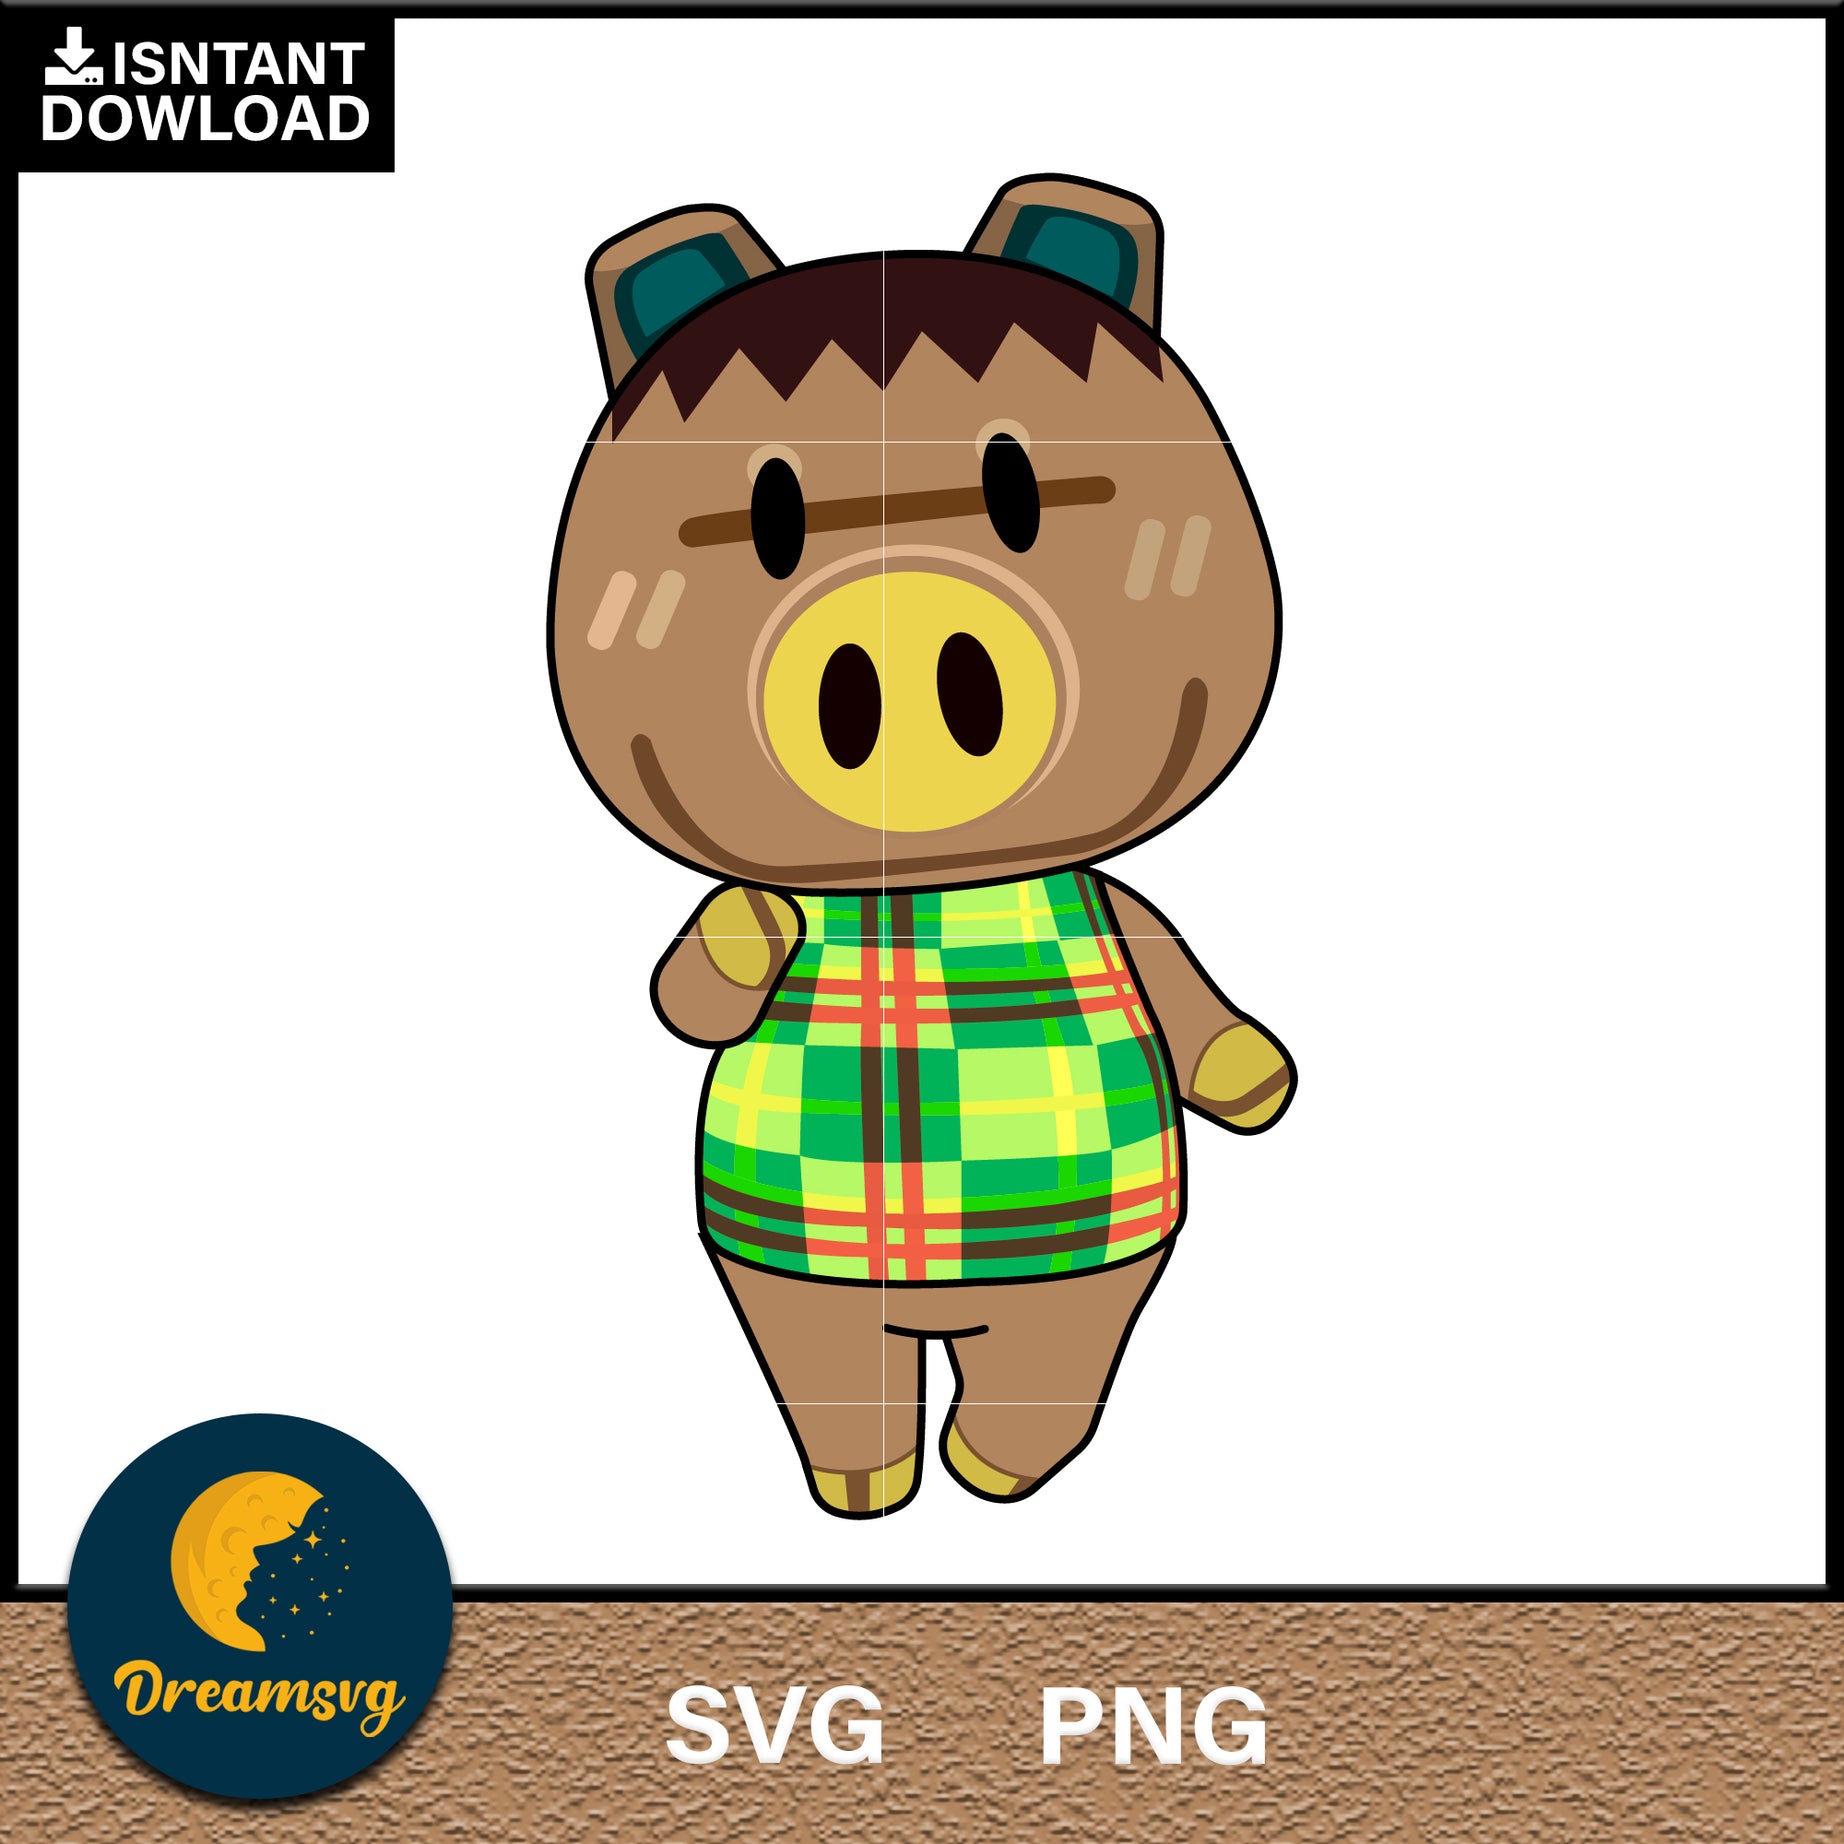 Spork Animal Crossing Svg, Animal Crossing Svg, Animal Crossing Png, Cartoon svg, svg, png digital file